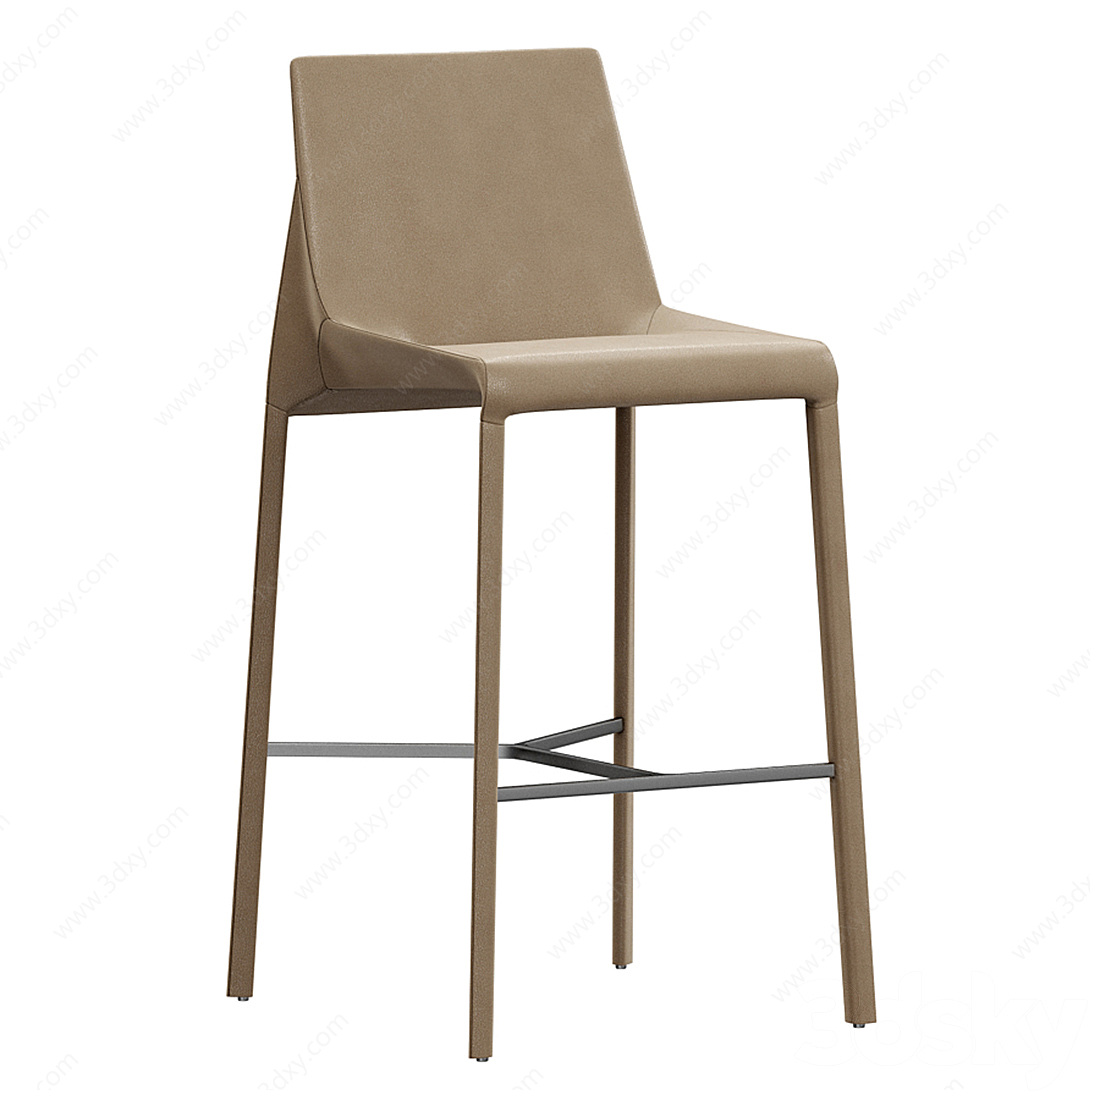 Poliform现代吧椅3D模型